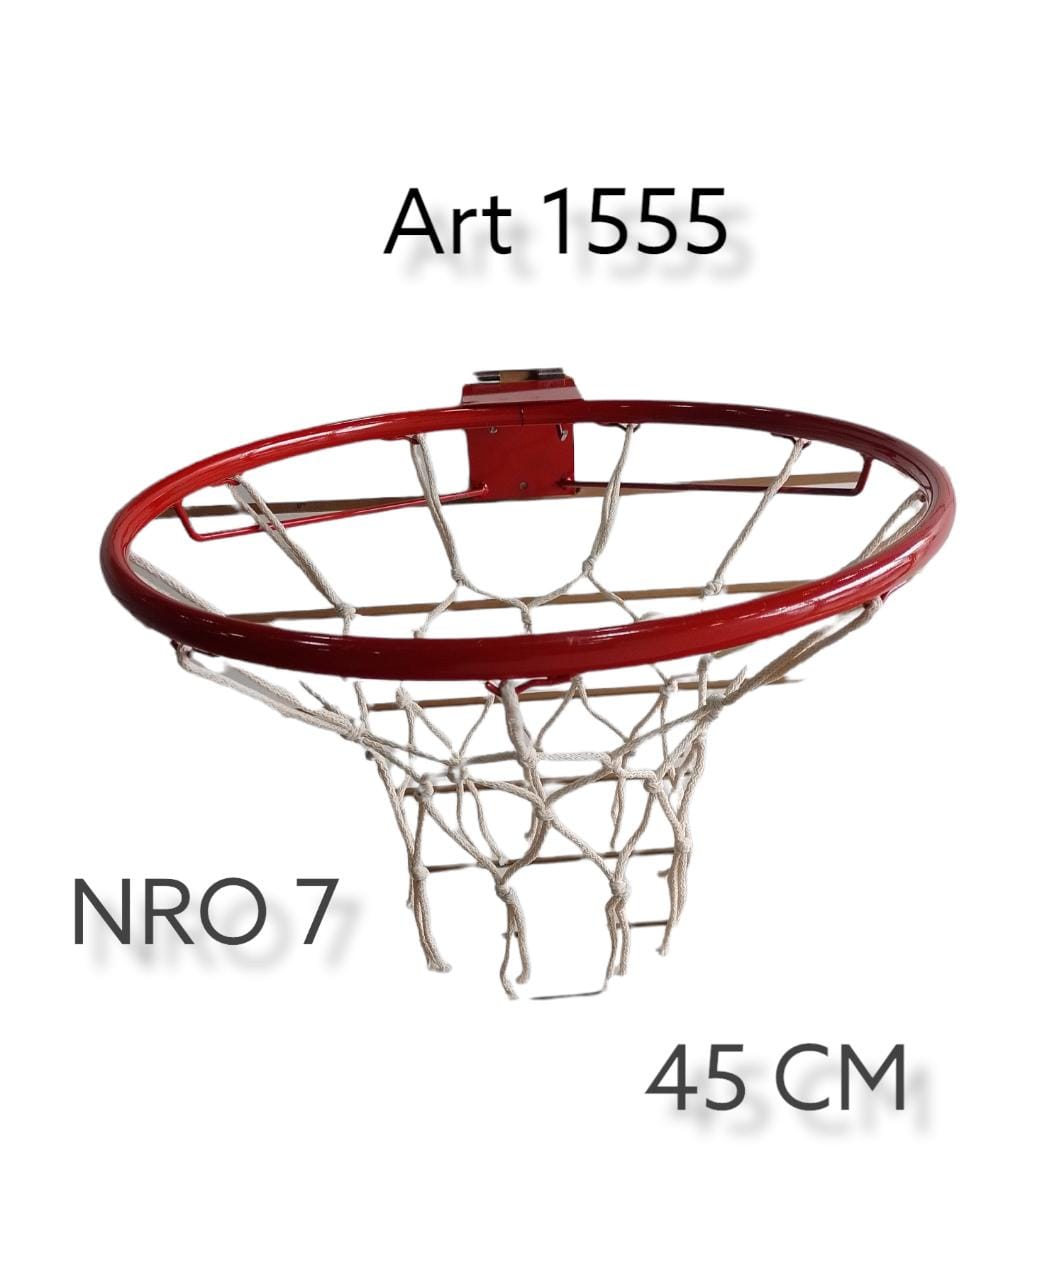 Aro de basquet  caÑo nro 7 